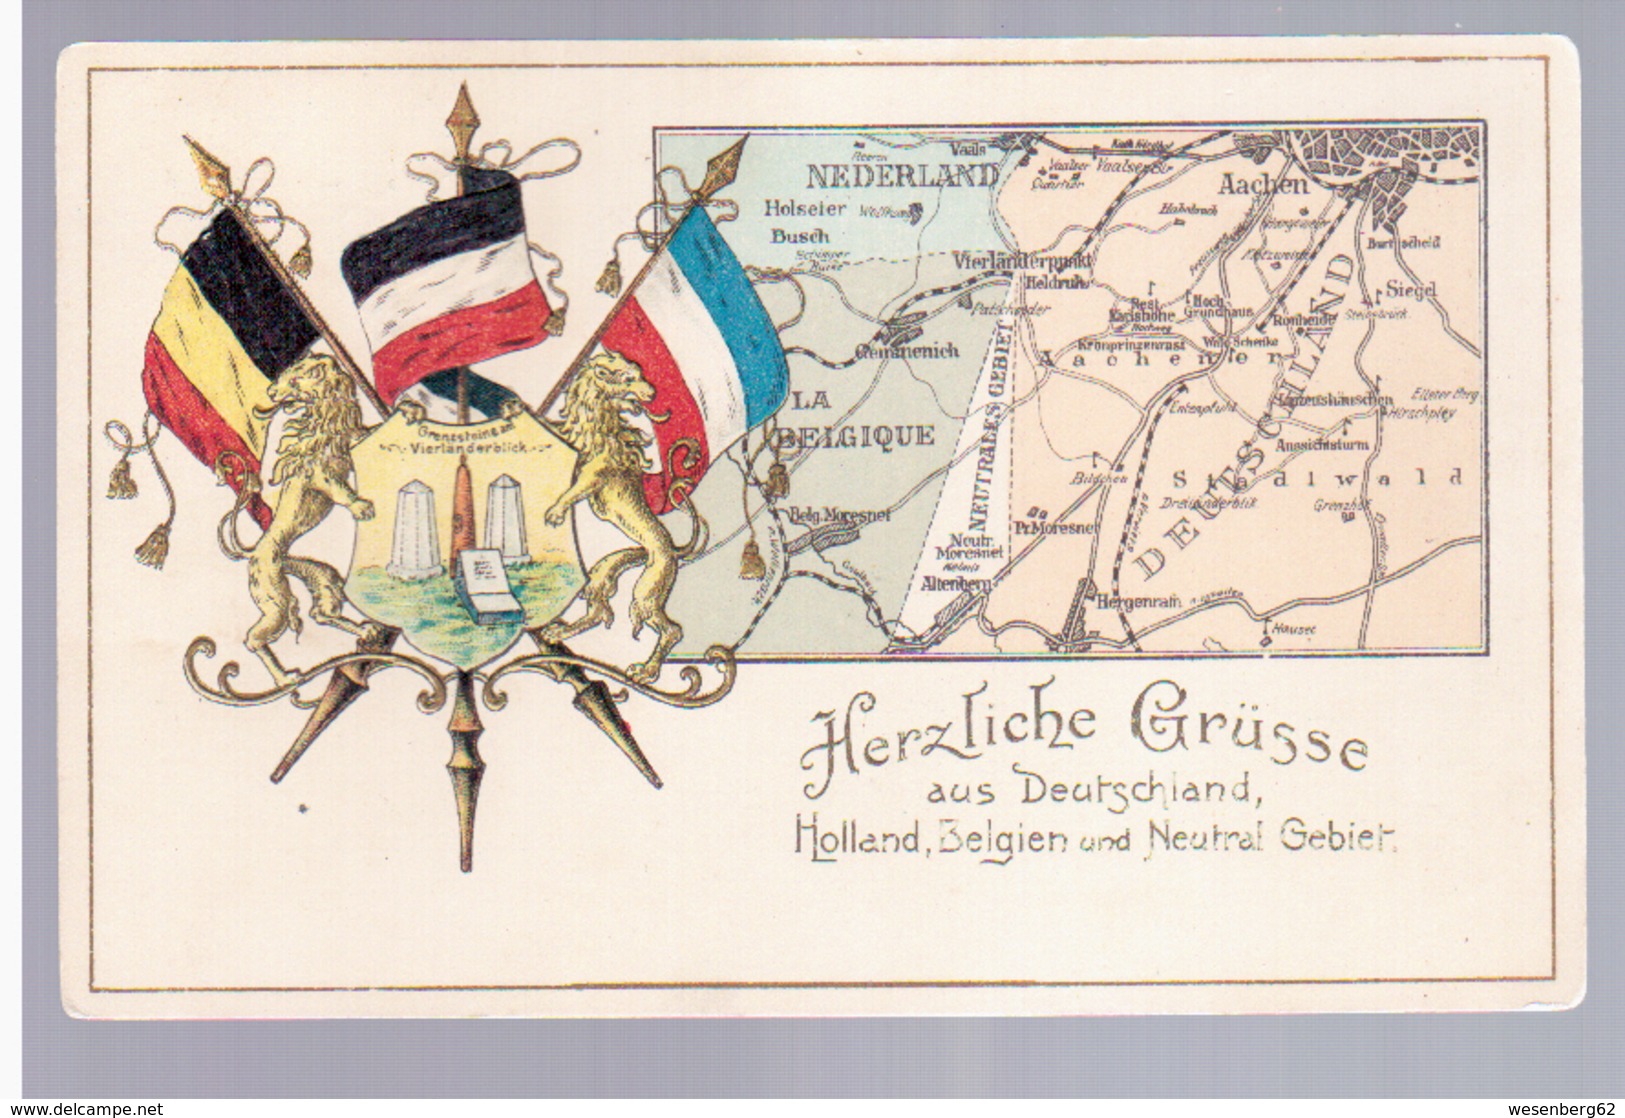 Herzliche Grusse Aus Deutschland Holland Belgien Und Neutral Gebiet Ca 1910 2 Scans - Plombières